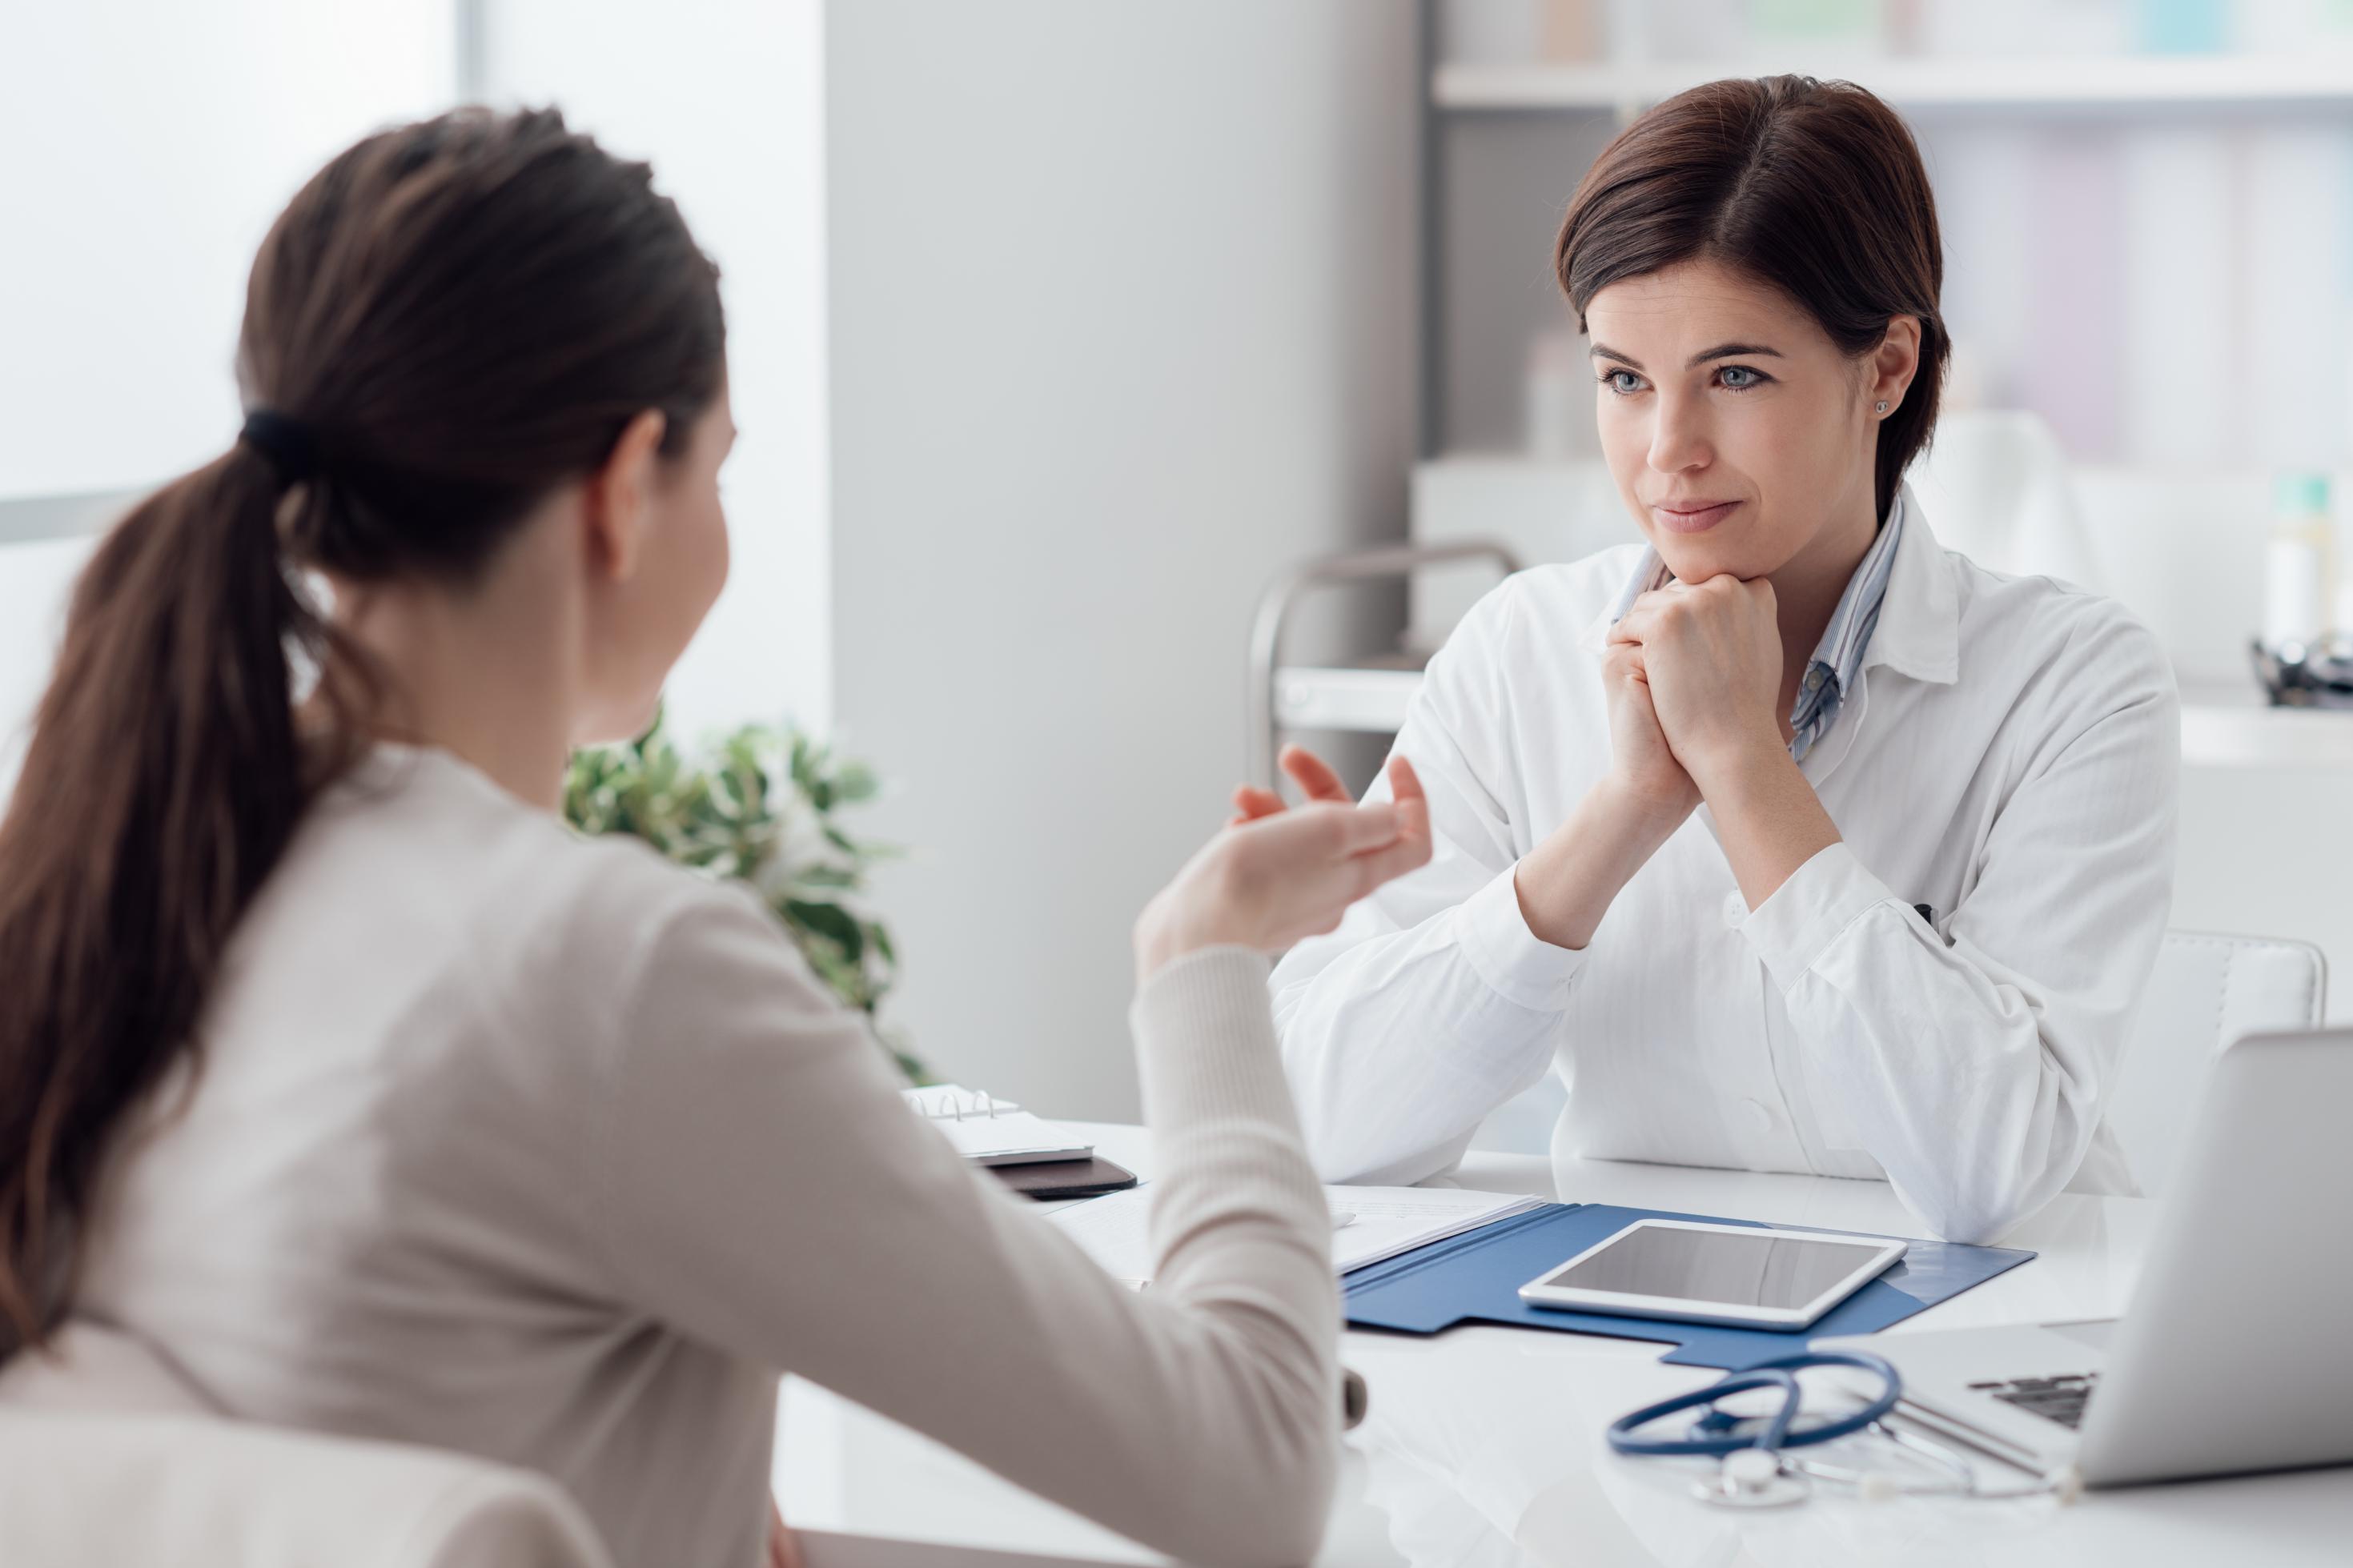 Eine Ärztin mit Stethoskop und Tablet hört einer Patientin zu.